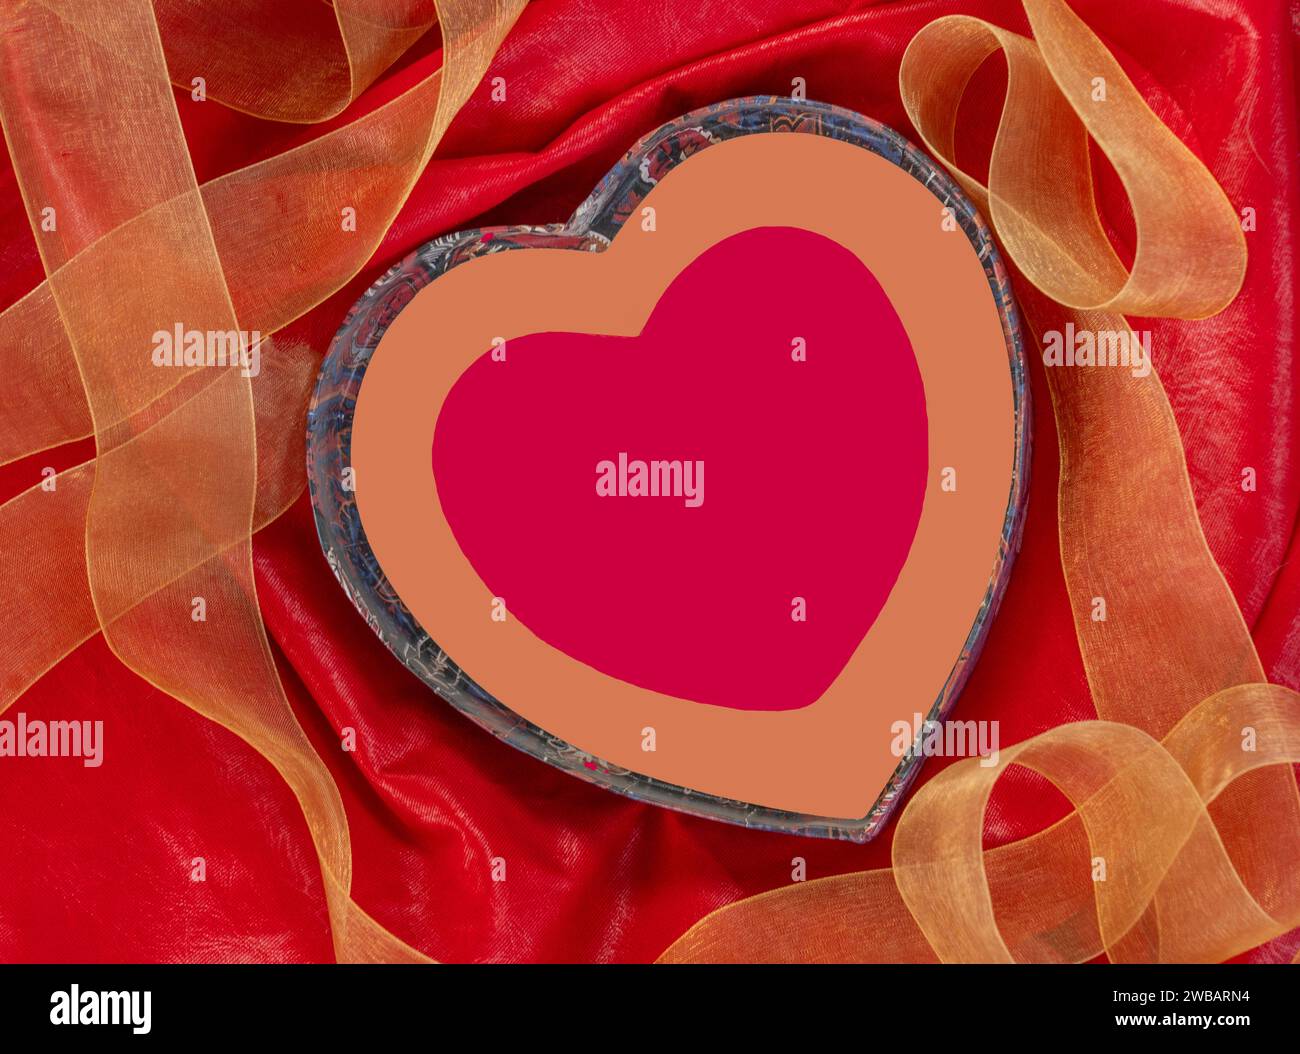 La mostra di San Valentino mostra cuori e contorno del cuore circondati da tessuti rossi e ricci dorati di delicati nastri. Spazio di testo disponibile all'interno del cuore. Foto Stock